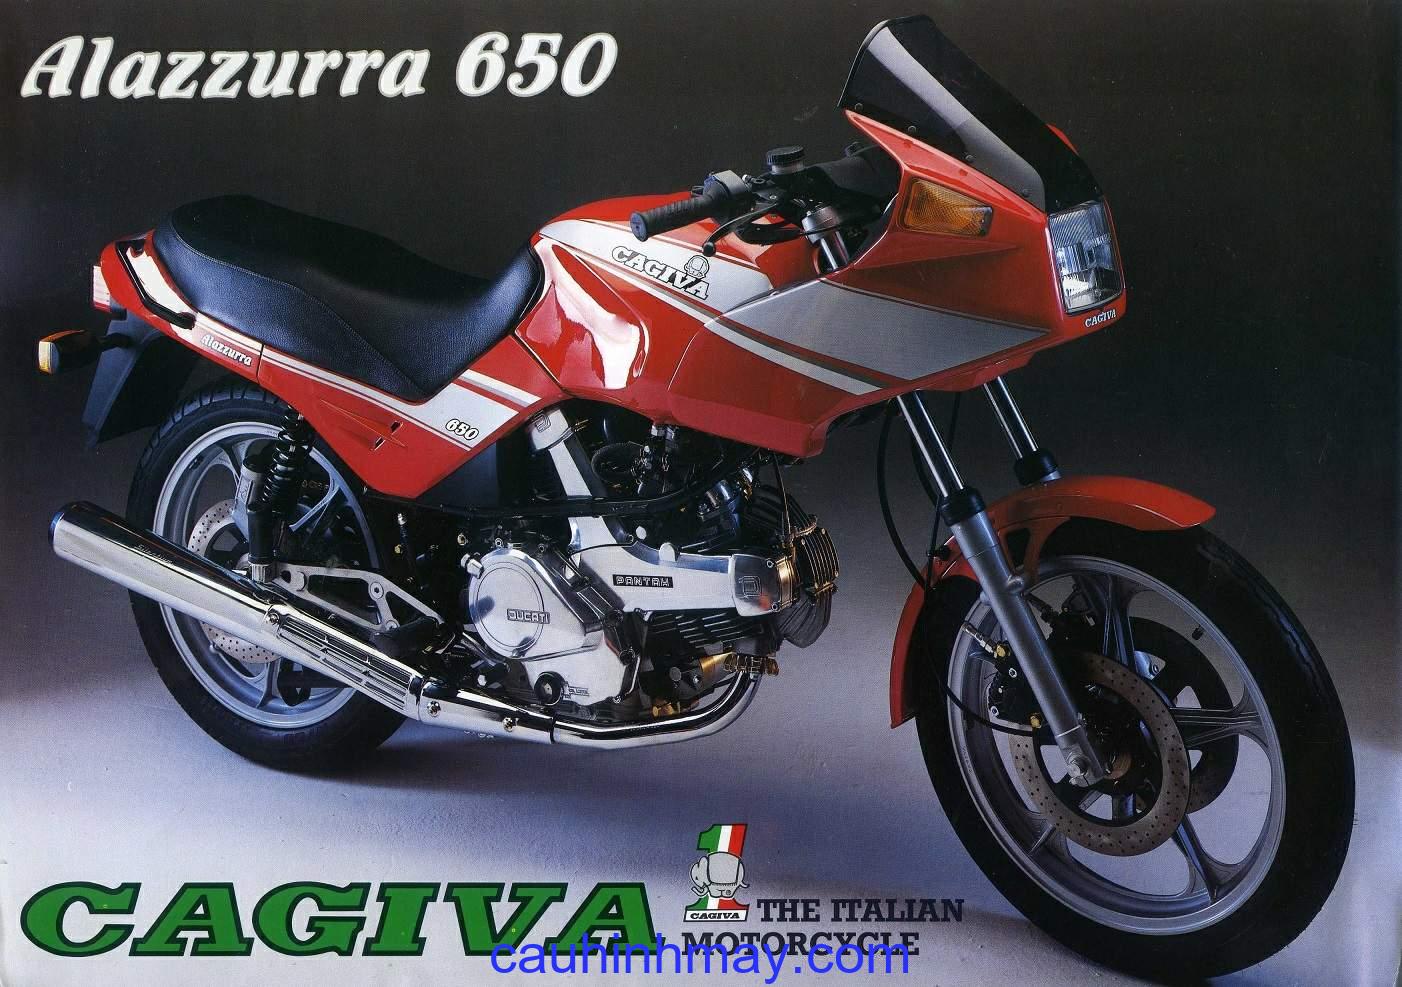 CAGIVA ALAZZURRA 650